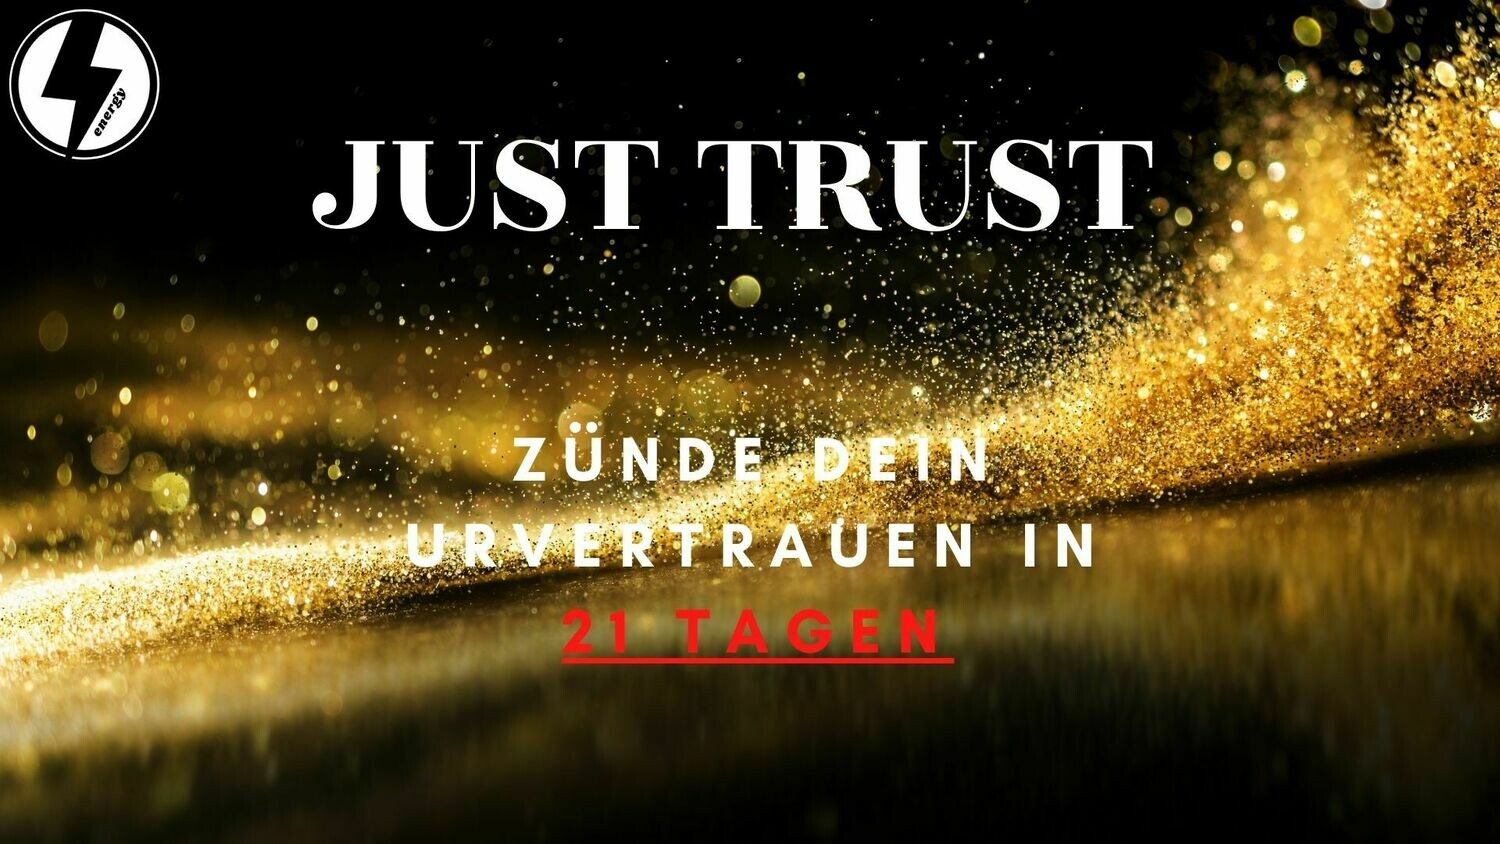 Just Trust : Zünde dein Urvertrauen - 21 Tage Programm